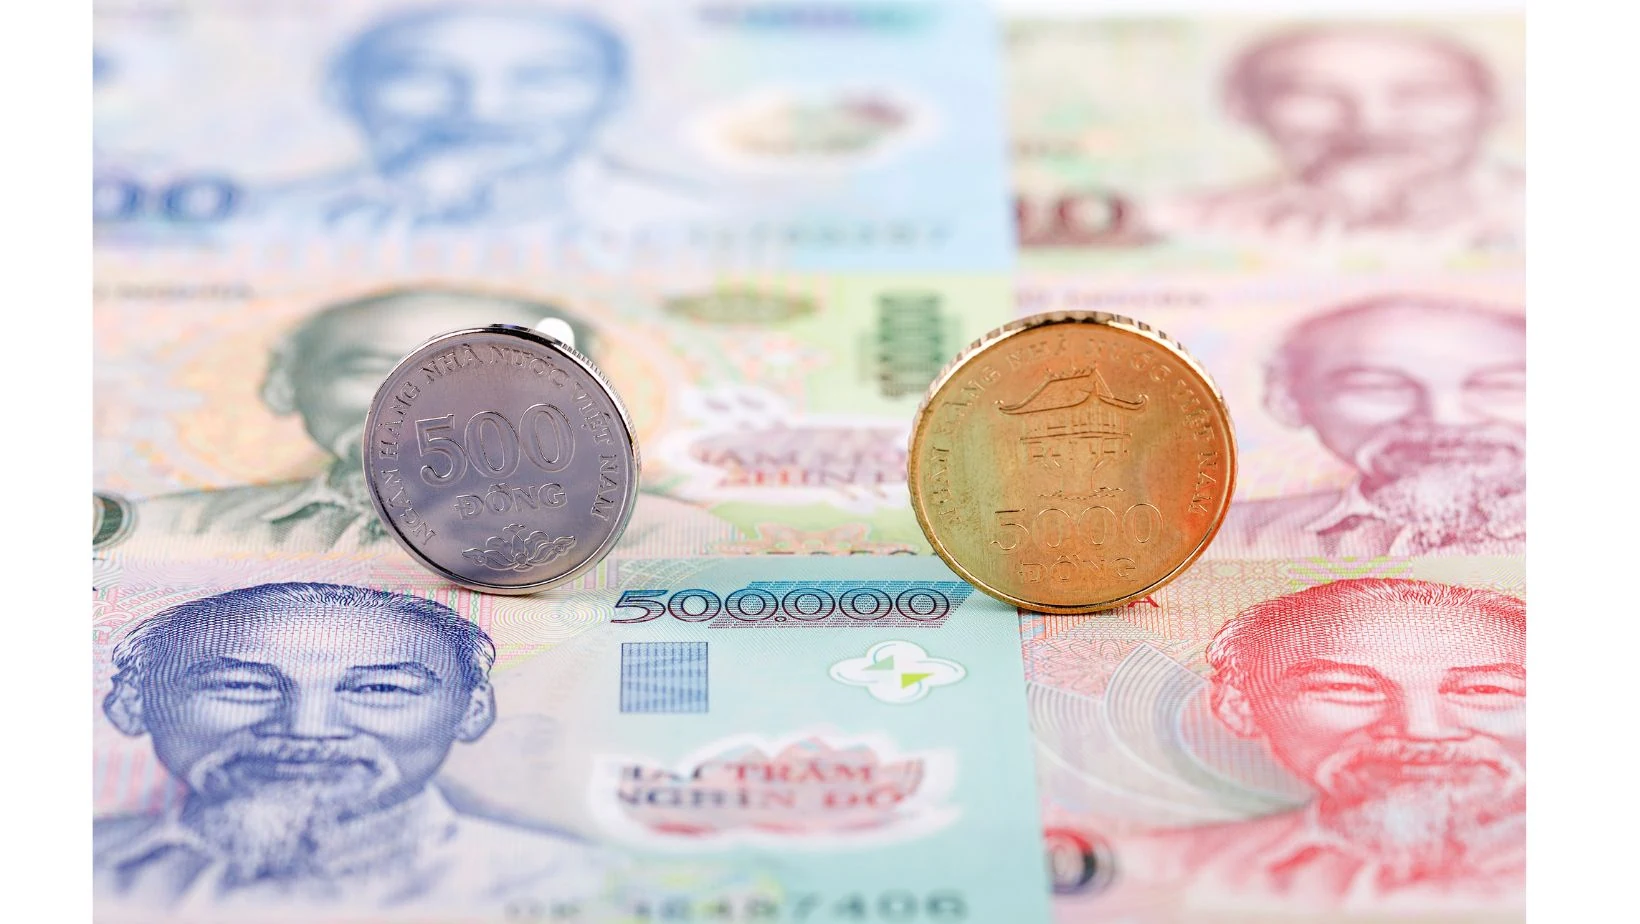 ธนบัตรและเหรียญเวียดนาม